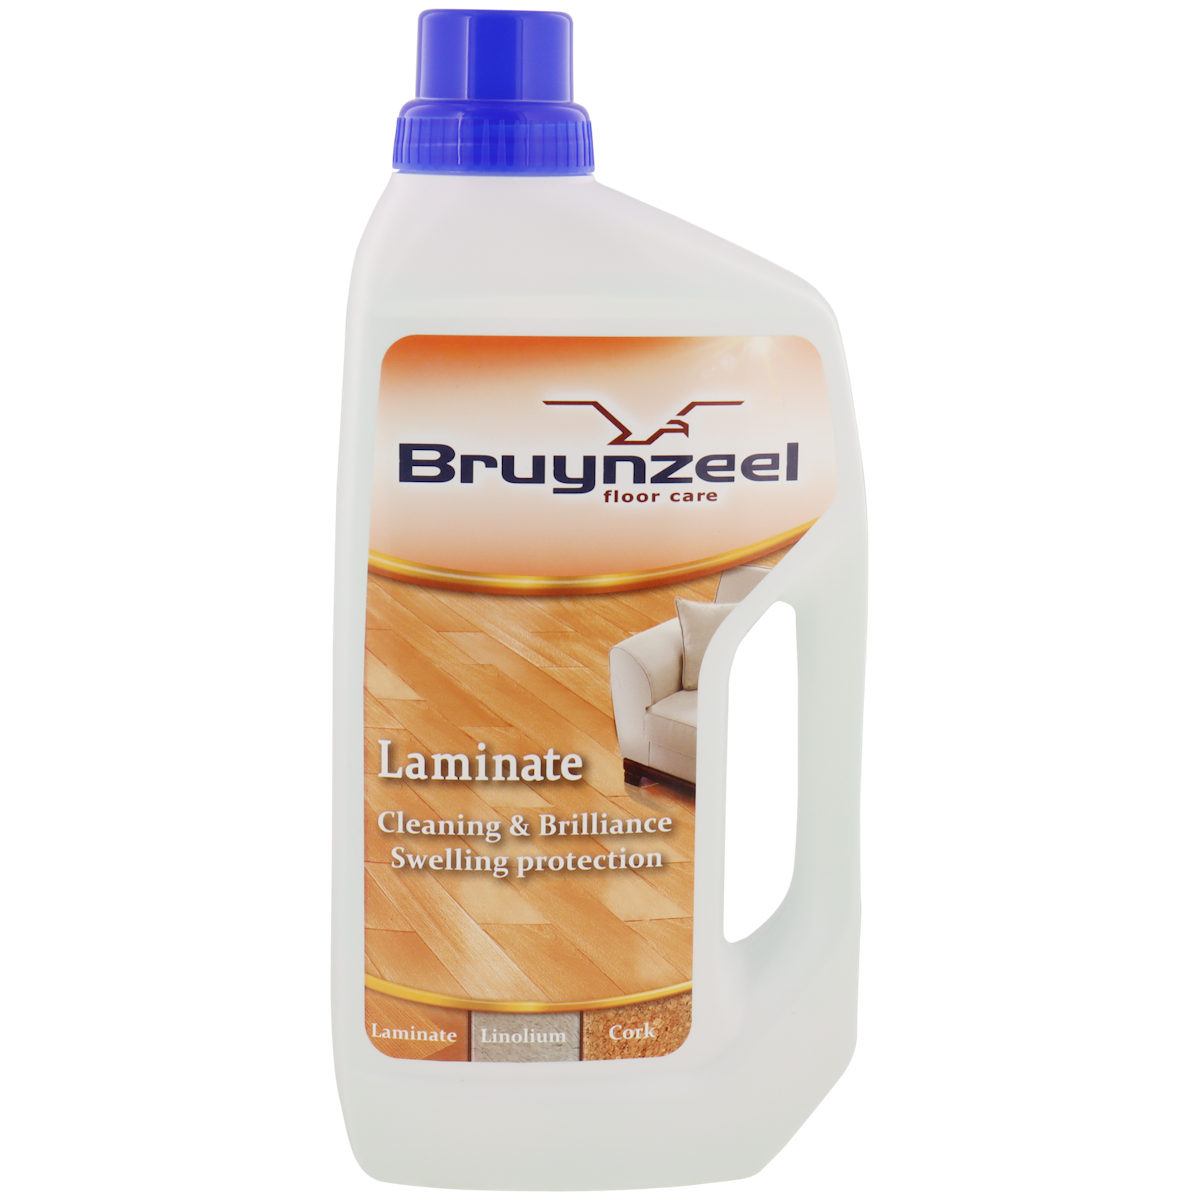 Bruynzeel laminaat-/houtreiniger